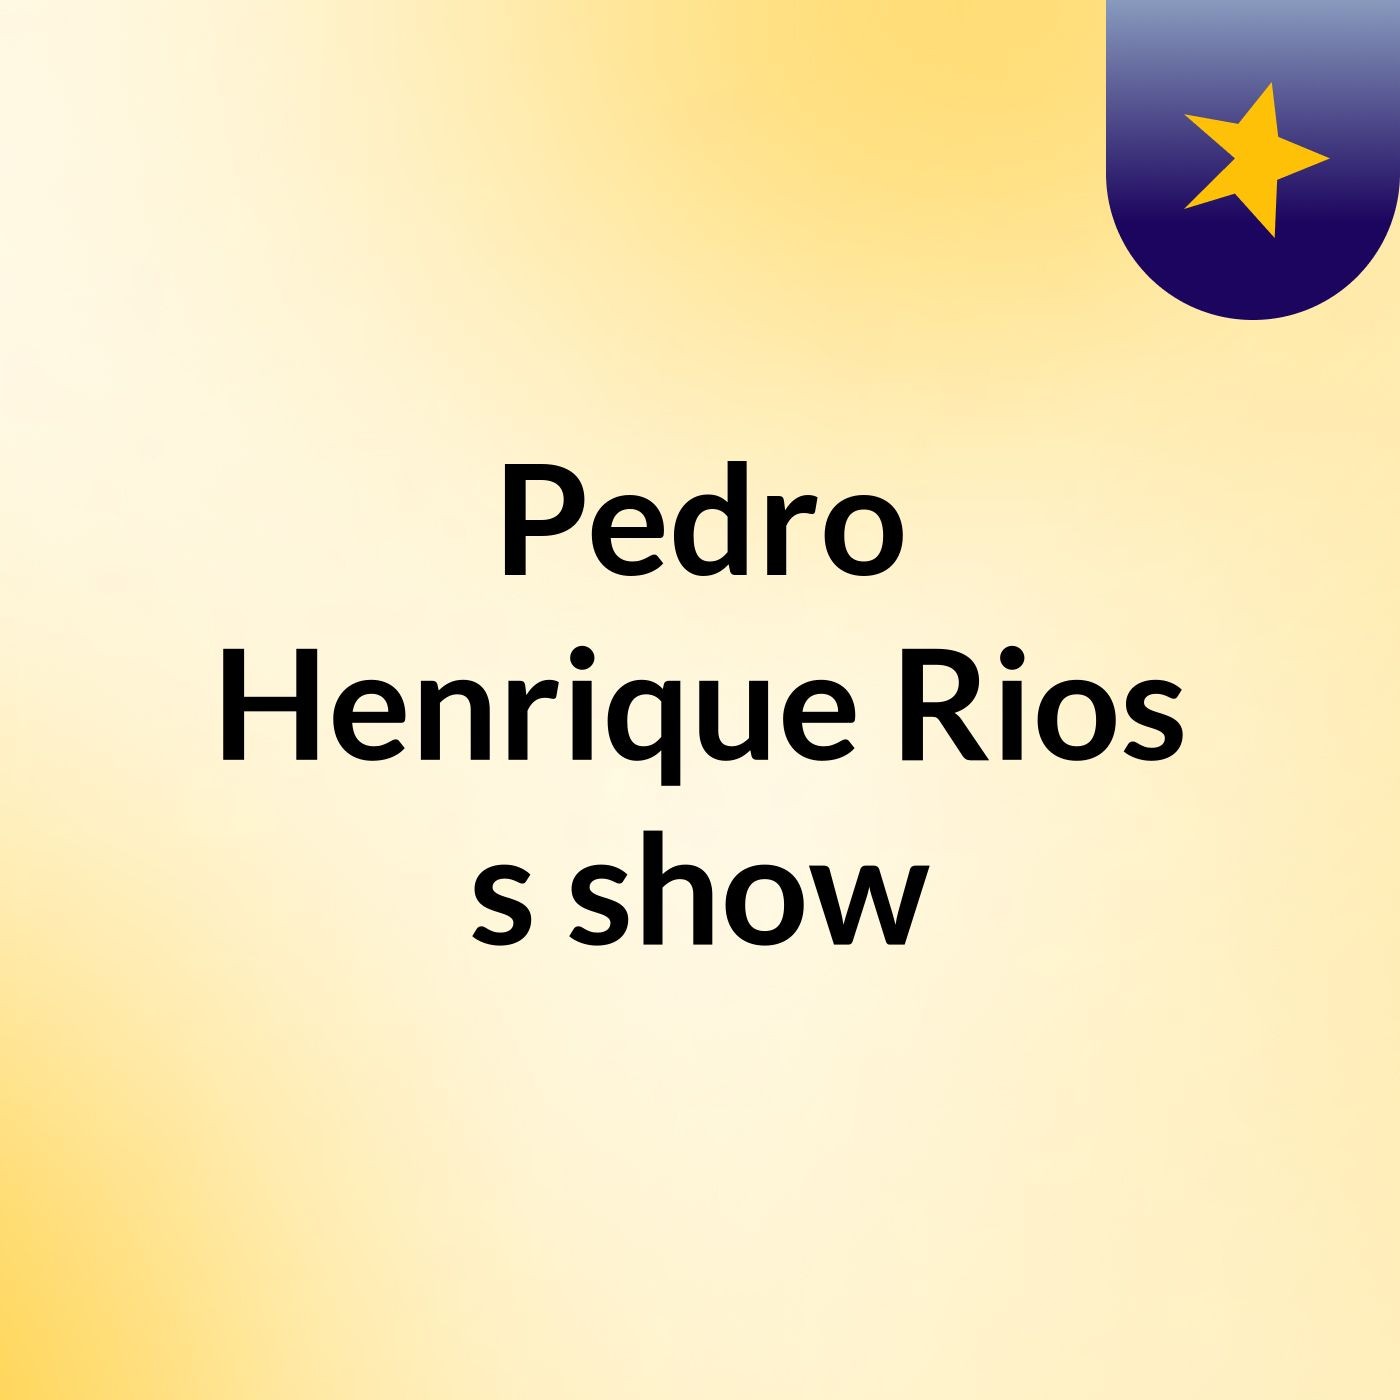 Pedro Henrique Rios's show